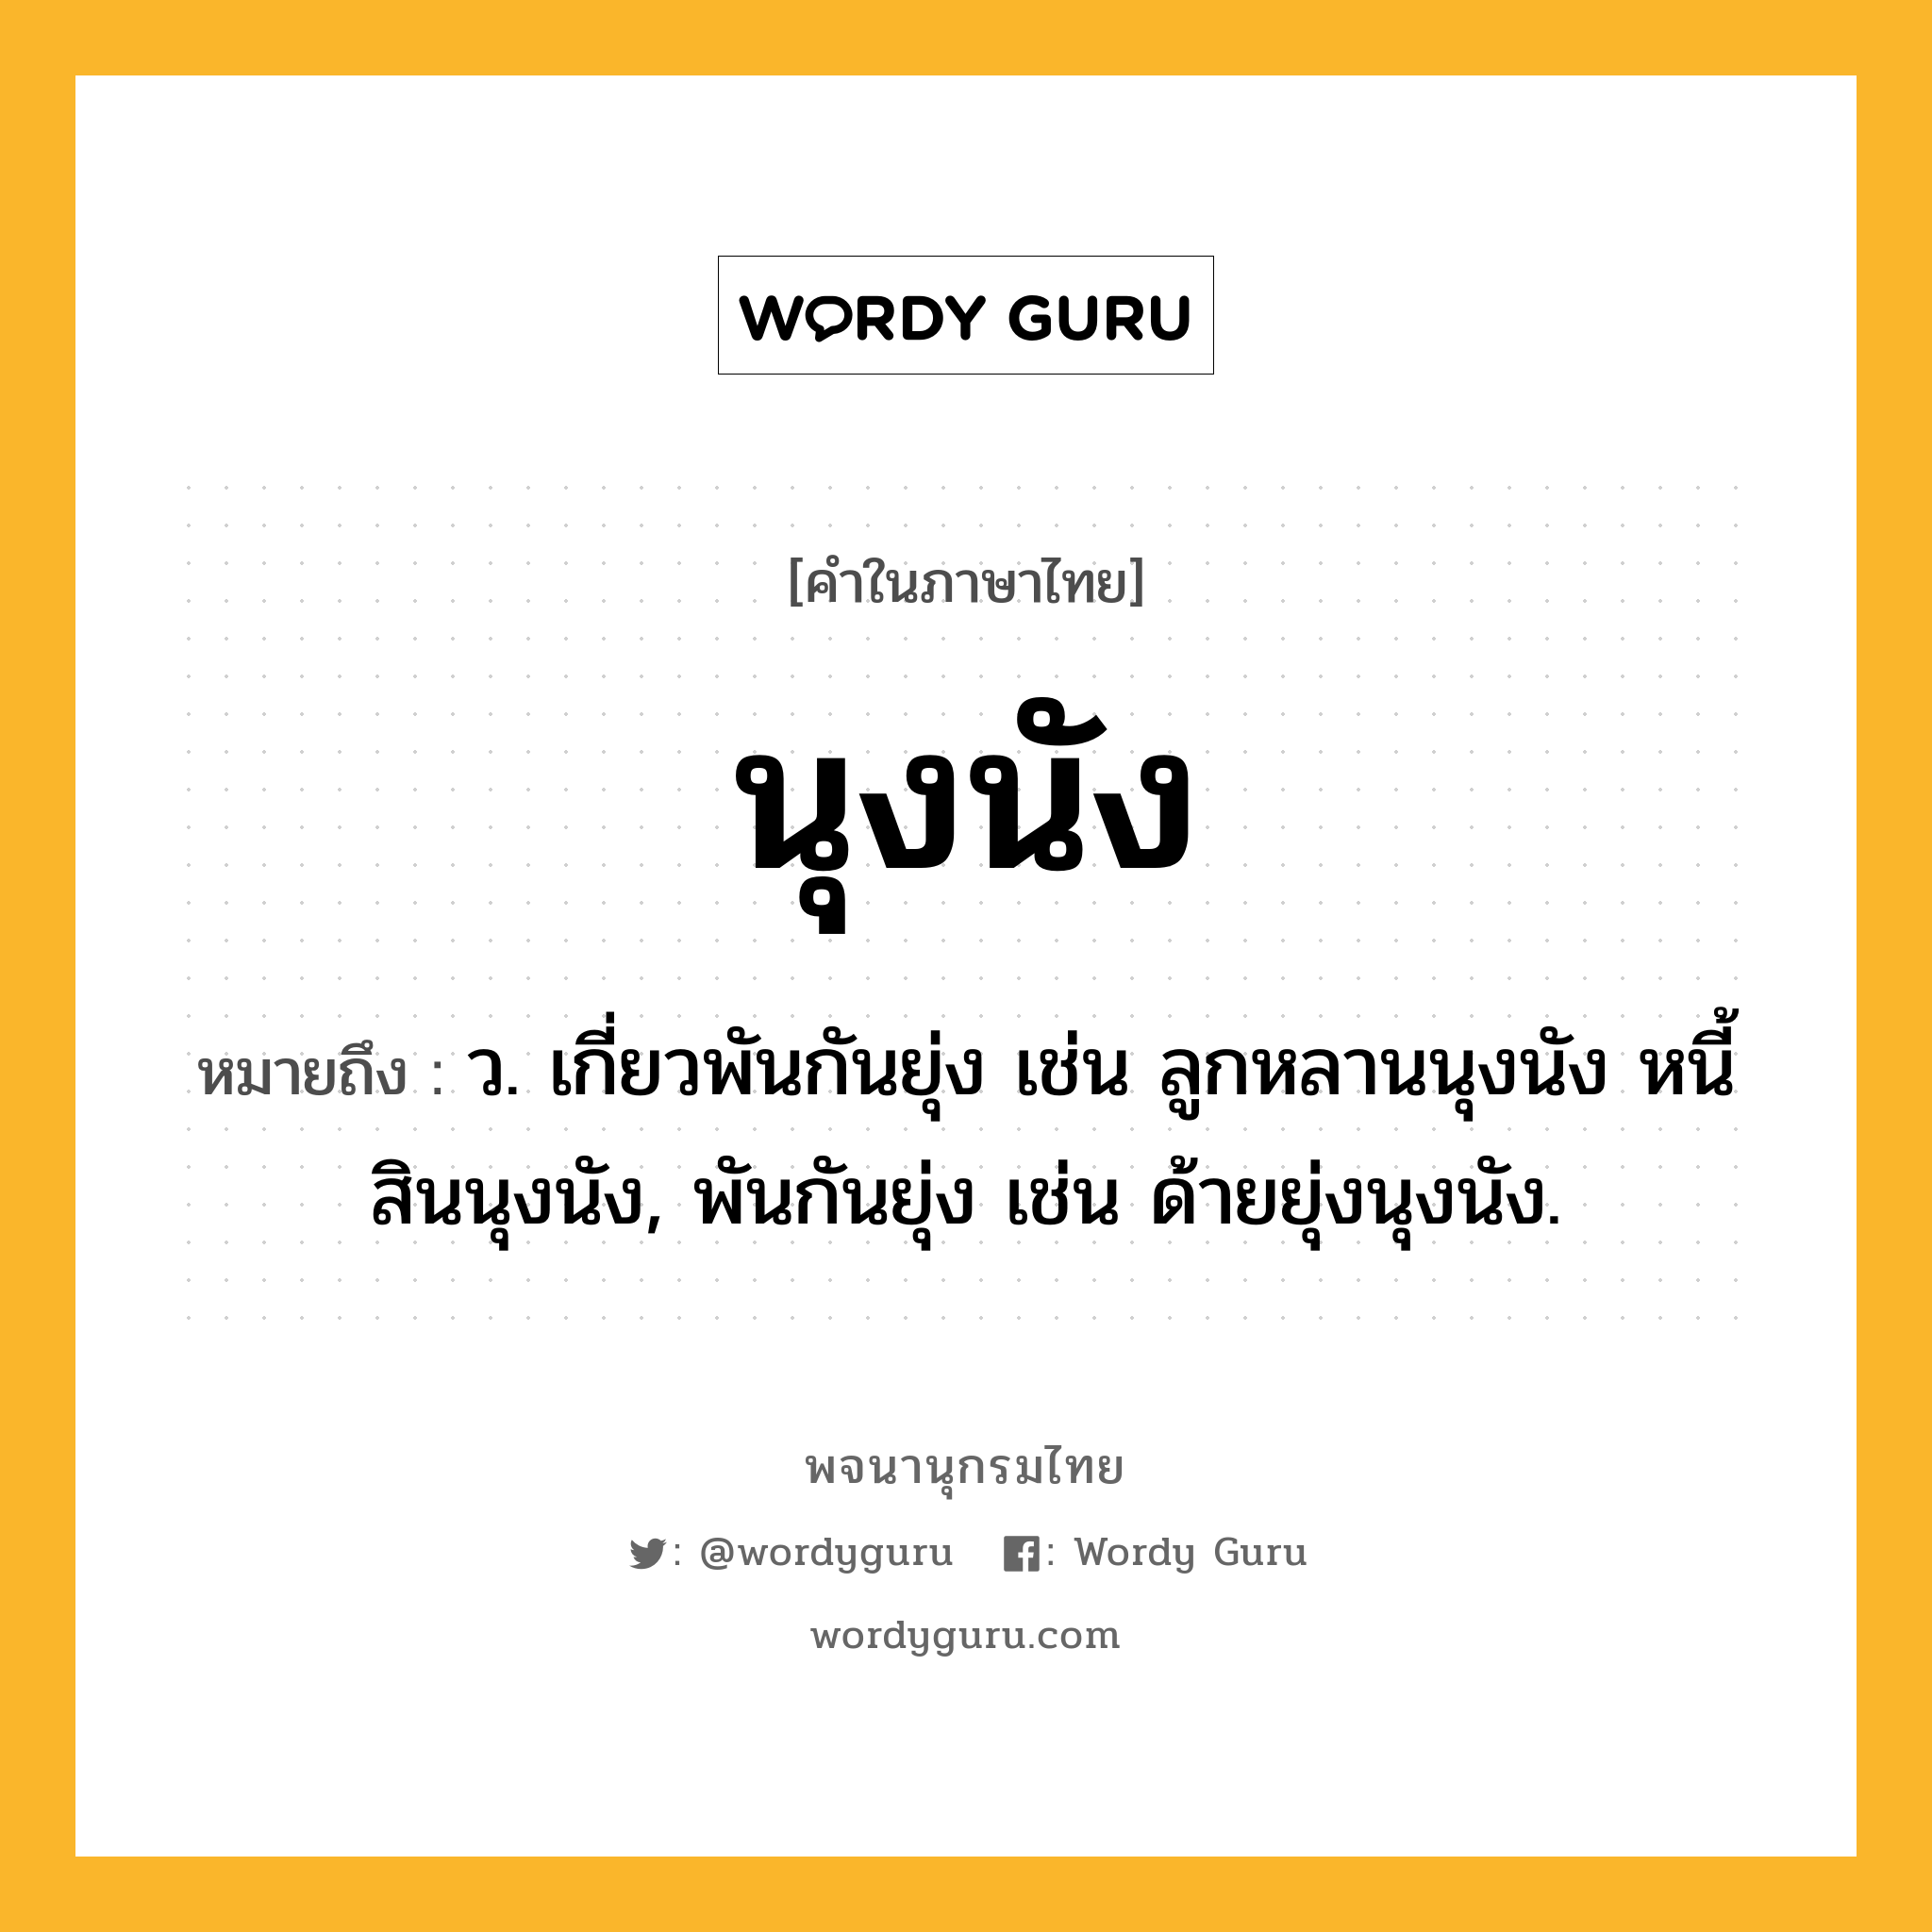 นุงนัง ความหมาย หมายถึงอะไร?, คำในภาษาไทย นุงนัง หมายถึง ว. เกี่ยวพันกันยุ่ง เช่น ลูกหลานนุงนัง หนี้สินนุงนัง, พันกันยุ่ง เช่น ด้ายยุ่งนุงนัง.